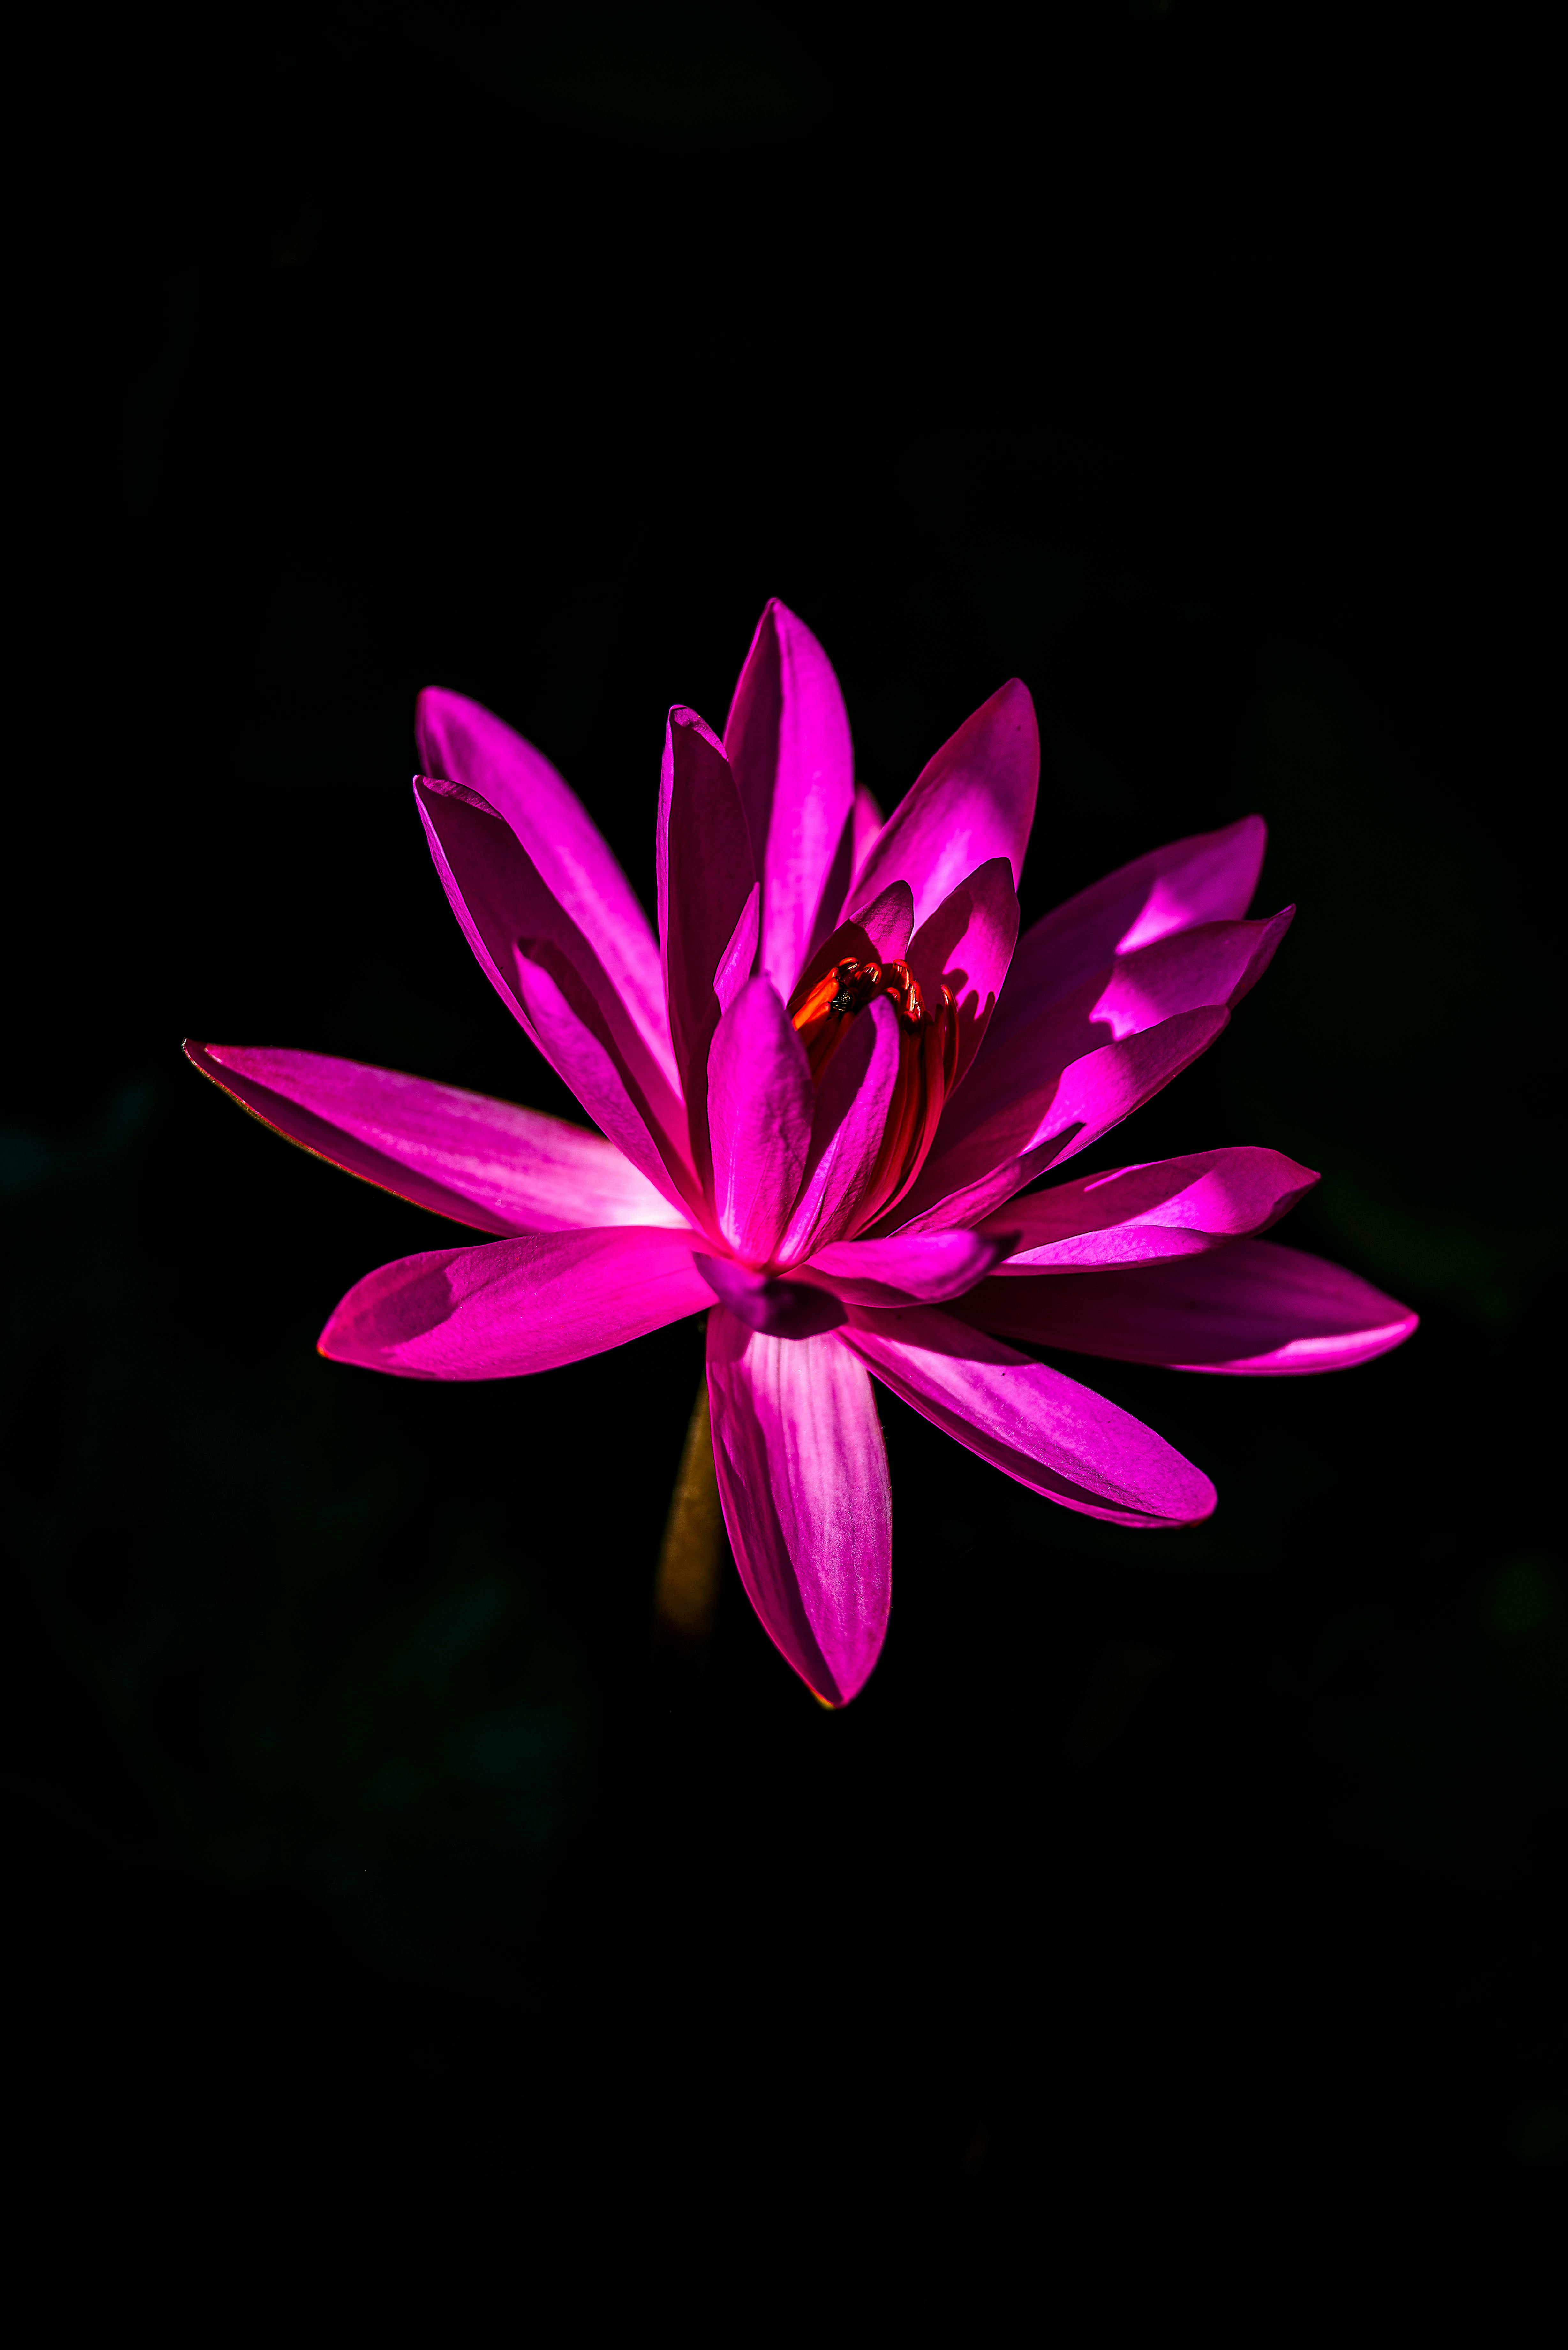 Ảnh có sẵn miễn phí về cận cảnh cánh hoa cây bông súng đen đẹp hệ thực  vật hình nền hoa hoa huệ hoa sen kỳ lạ lý lịch màu màu tím